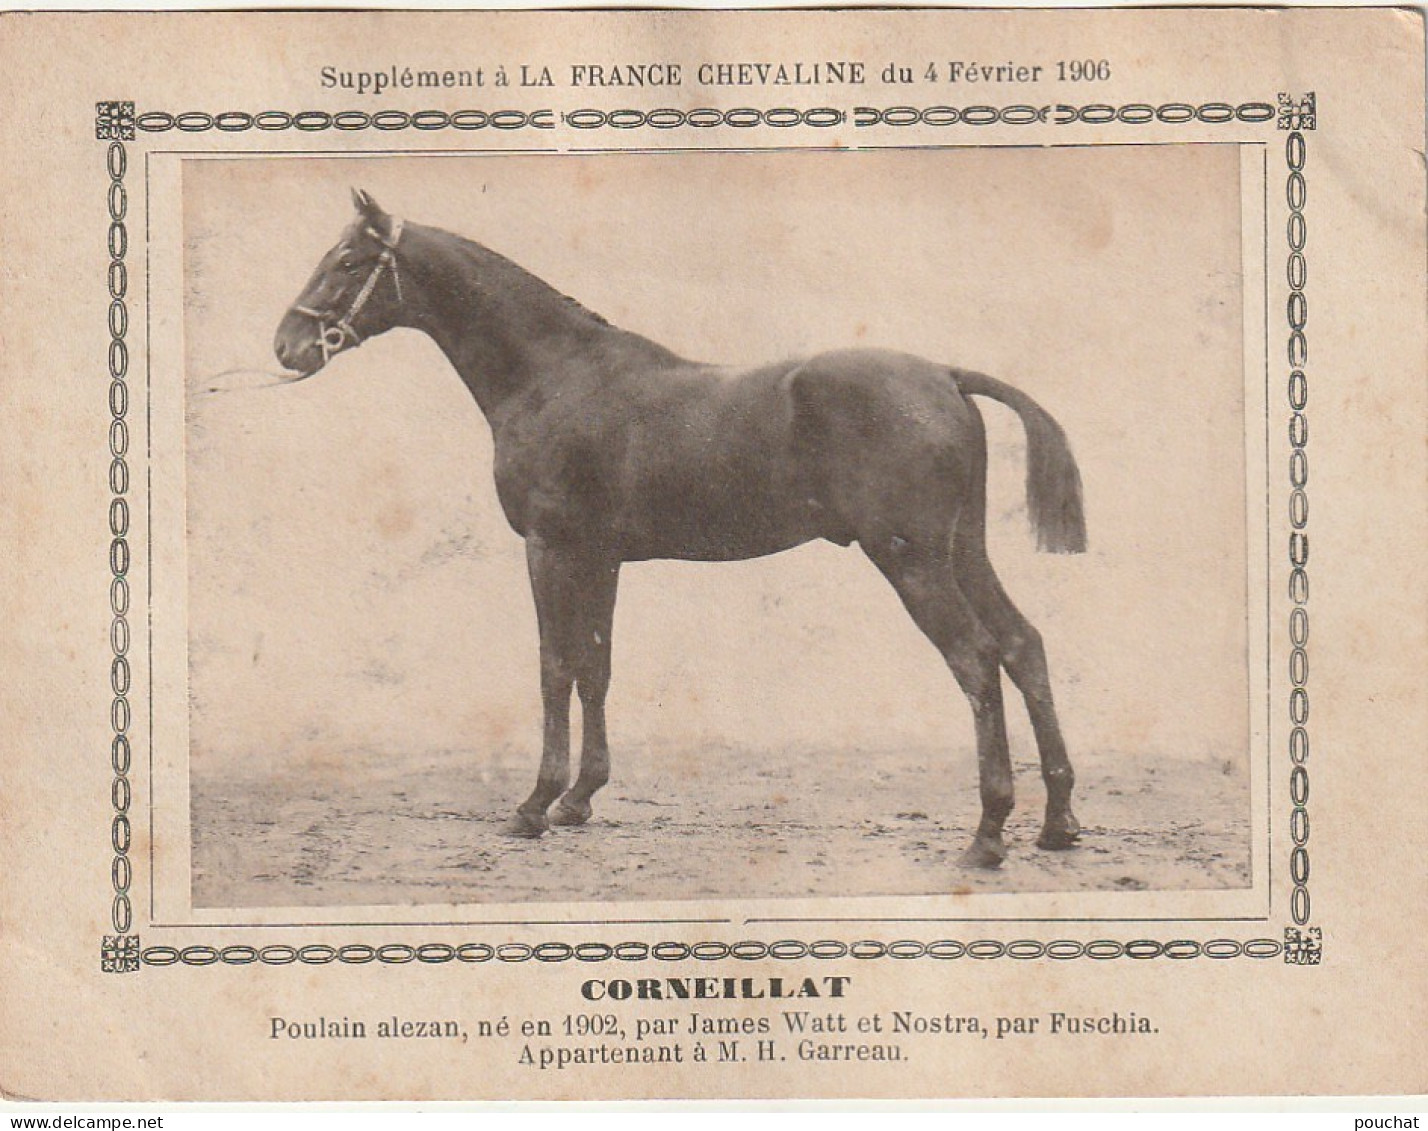 AA+ - " CORNEILLAT " - POULAIN ALEZAN  APPARTENANT A M. H. GARREAU - SUPPL. FRANCE CHEVALINE  FEVRIER 1906 - Hípica